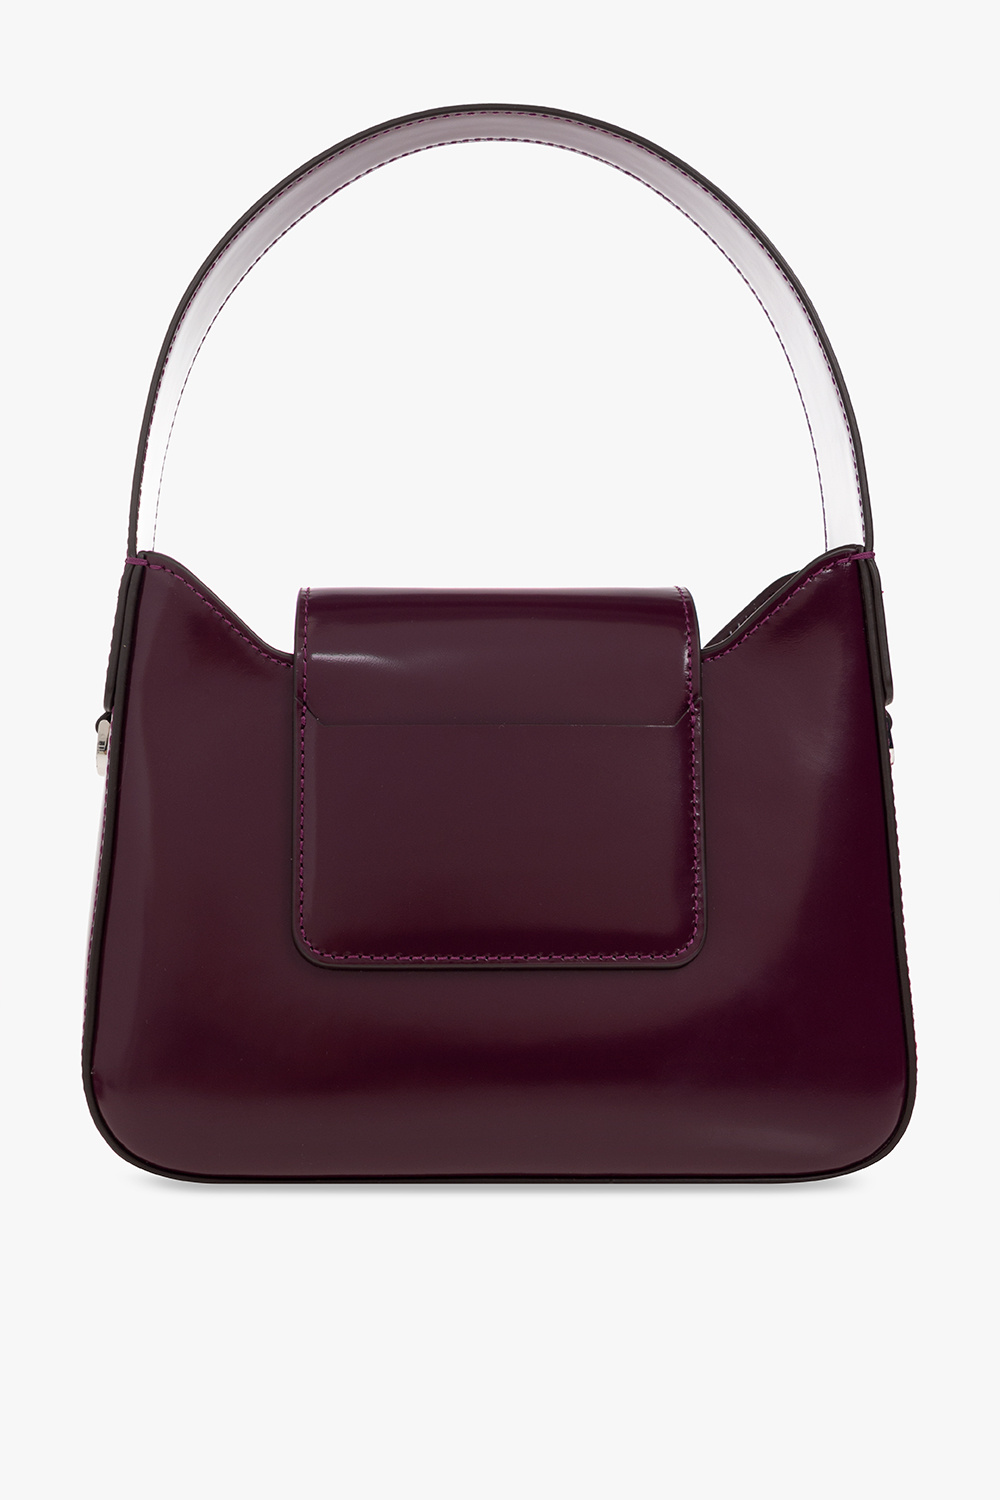 47 Hottest Purple Bags   Purple bags, Bags, Louis vuitton handbags